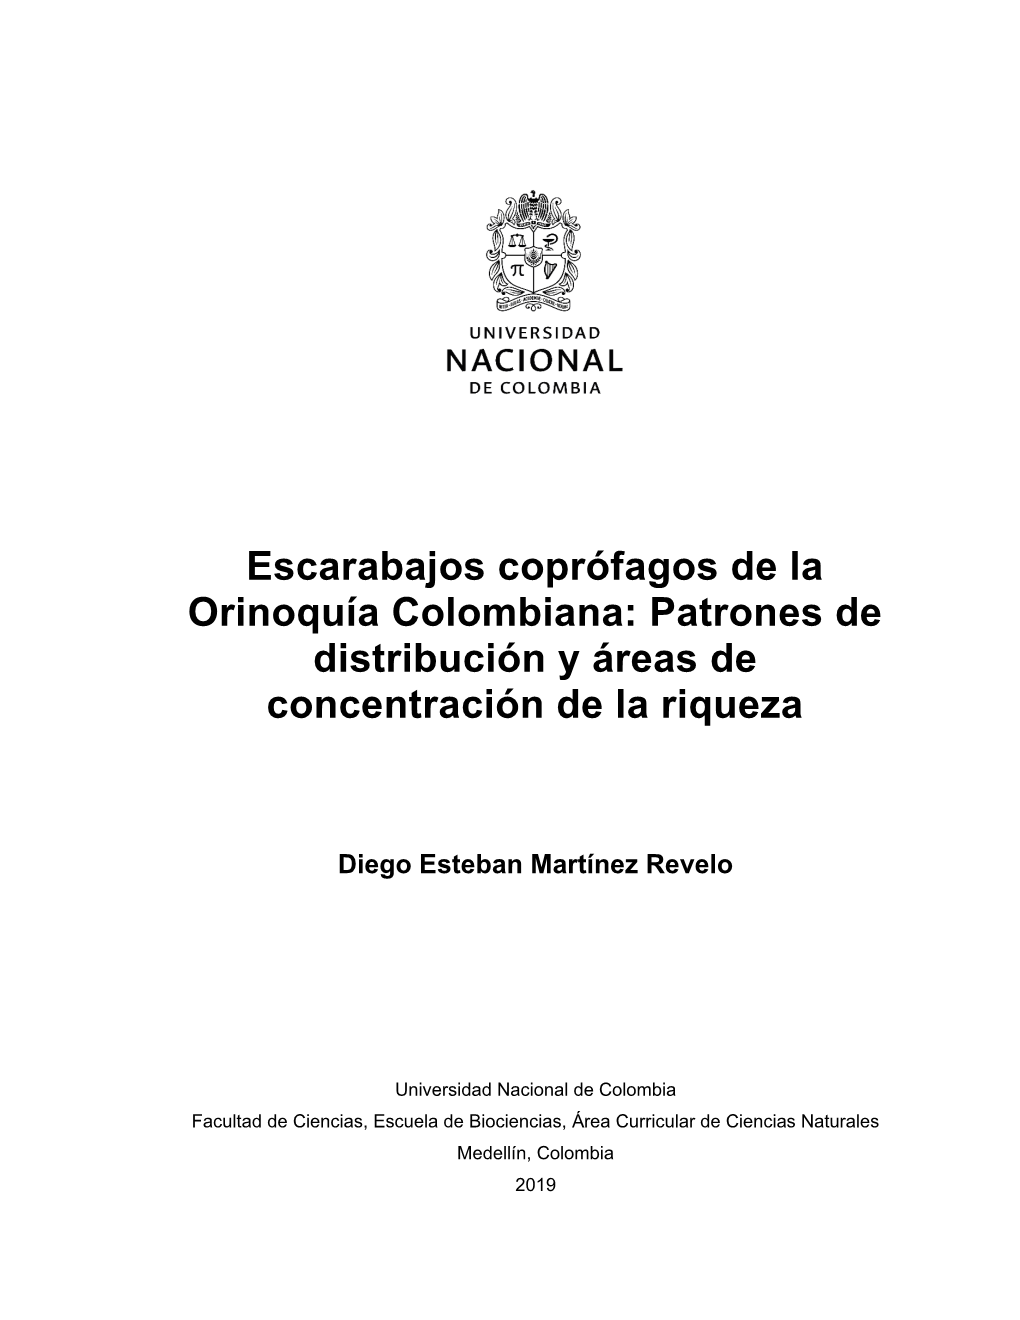 Escarabajos Coprófagos De La Orinoquía Colombiana: Patrones De Distribución Y Áreas De Concentración De La Riqueza